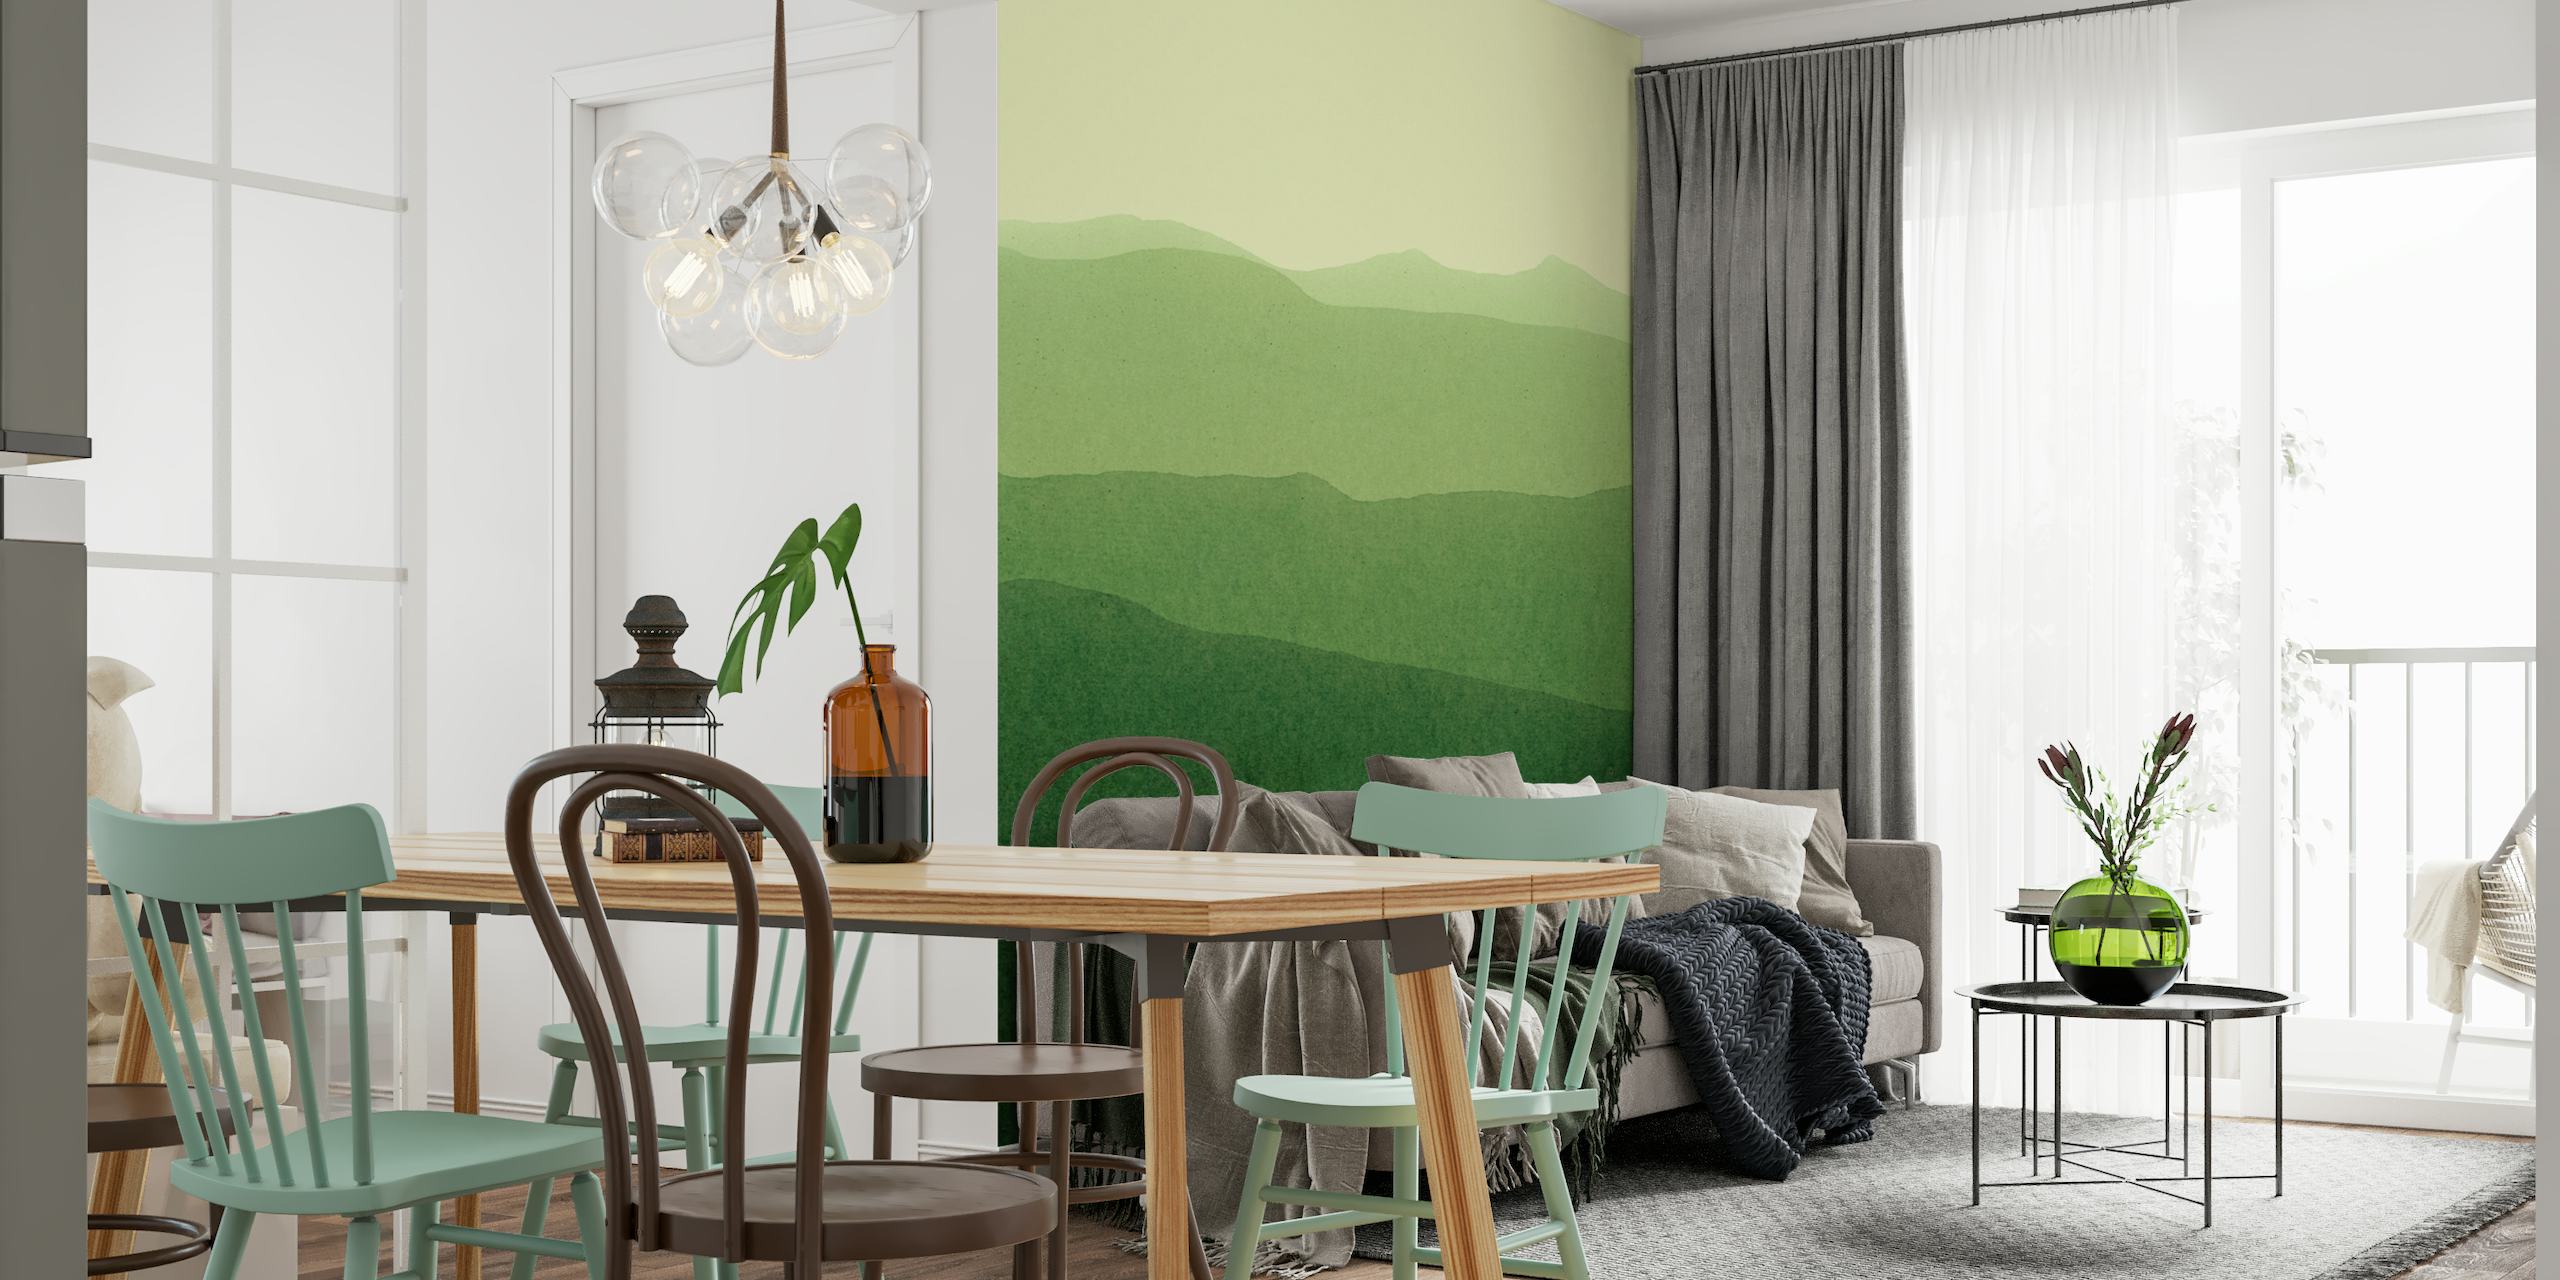 Fotomural estilizado paisaje degradado verde que representa colinas